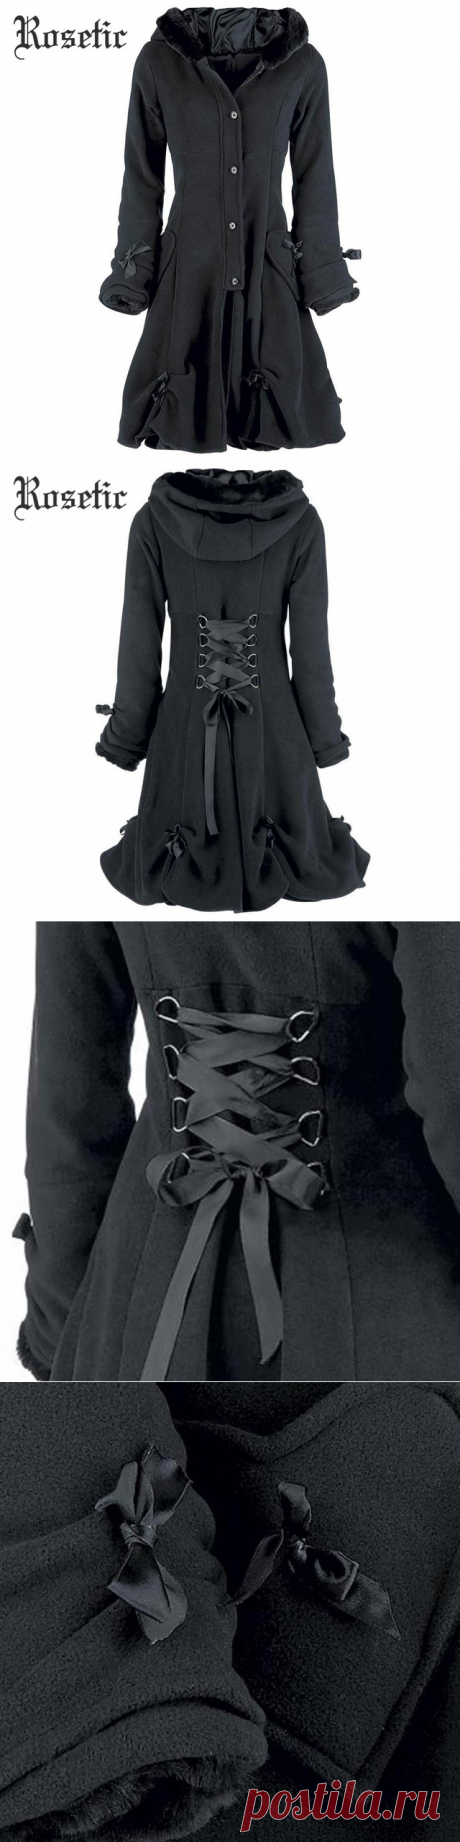 Rosetic Готический Винтаж пальто женский, черный Кружево Up осень зима бантом верхняя одежда с капюшоном Тренчи для женщин уличная опрятный ретро гот Пальто для будущих мам купить на AliExpress